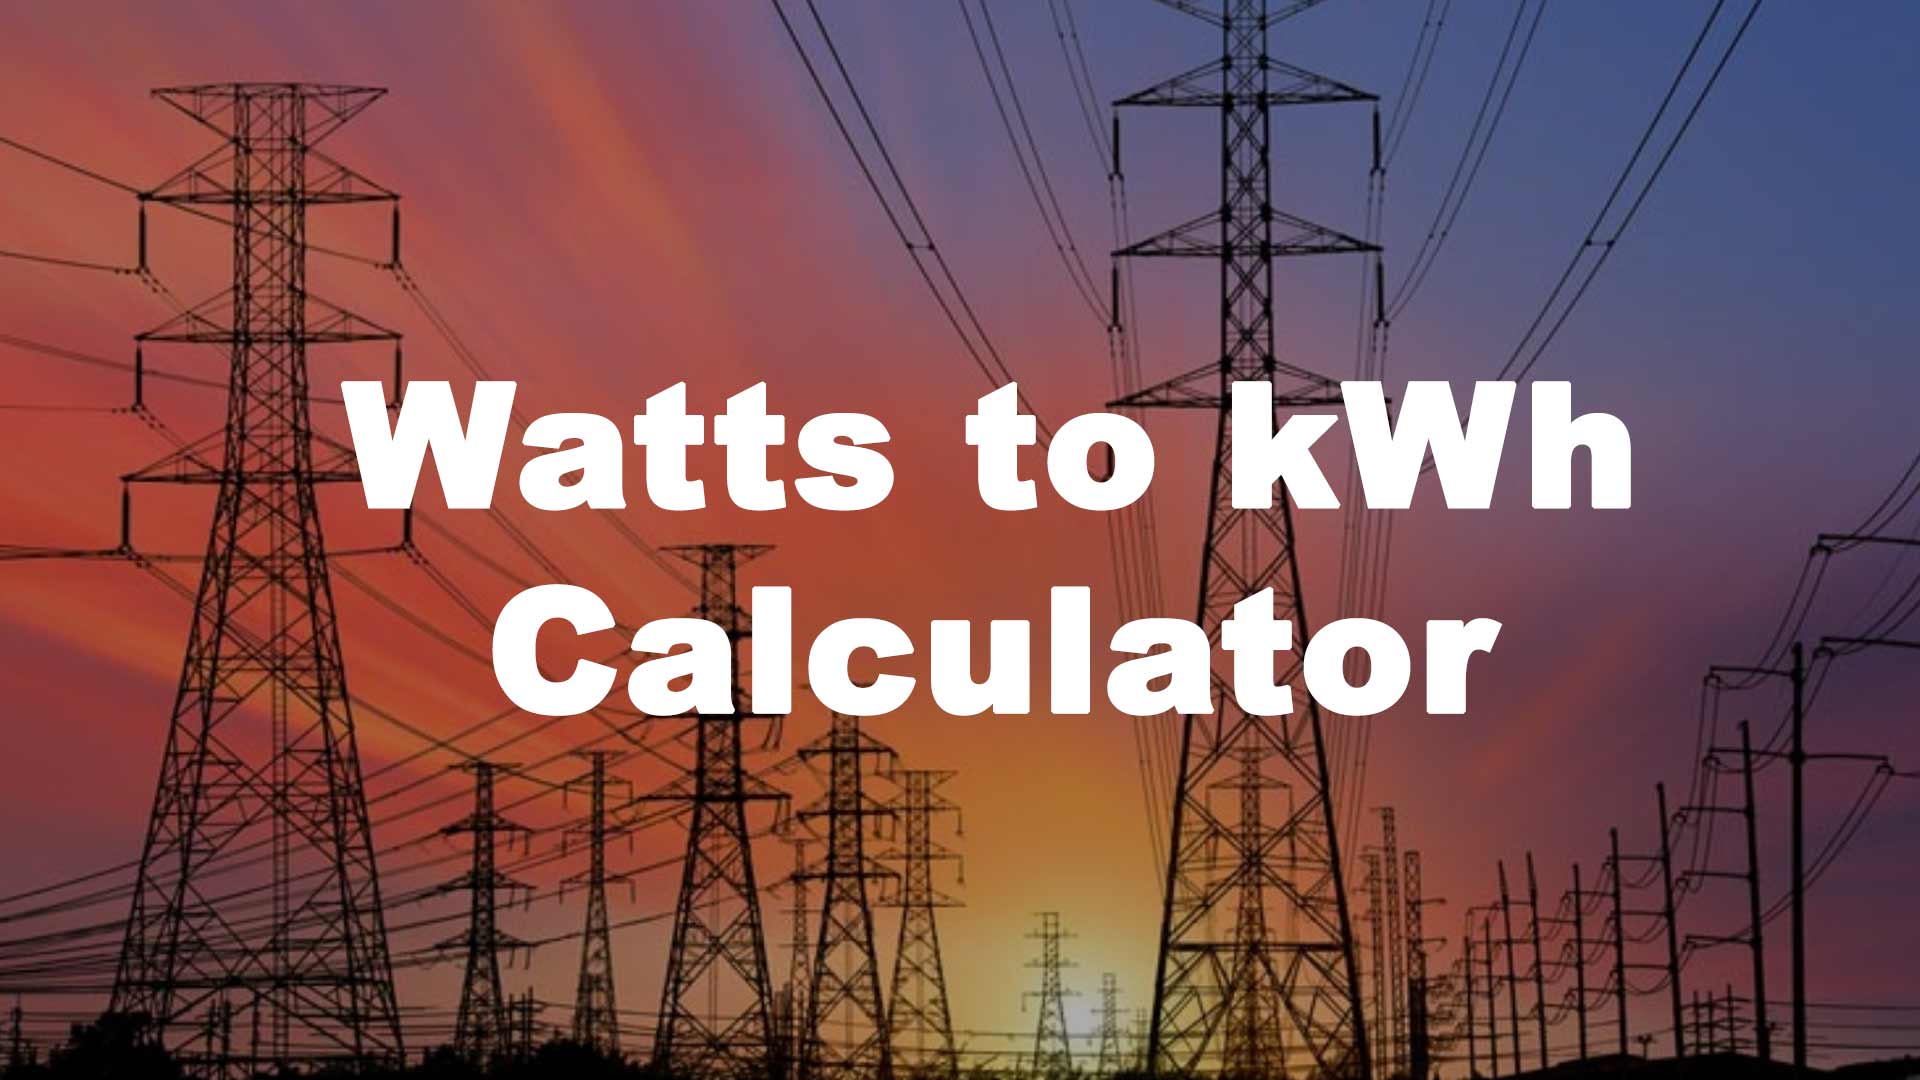 Watts to kWh Calculator - Watts to Kilowatt Hours Conversion